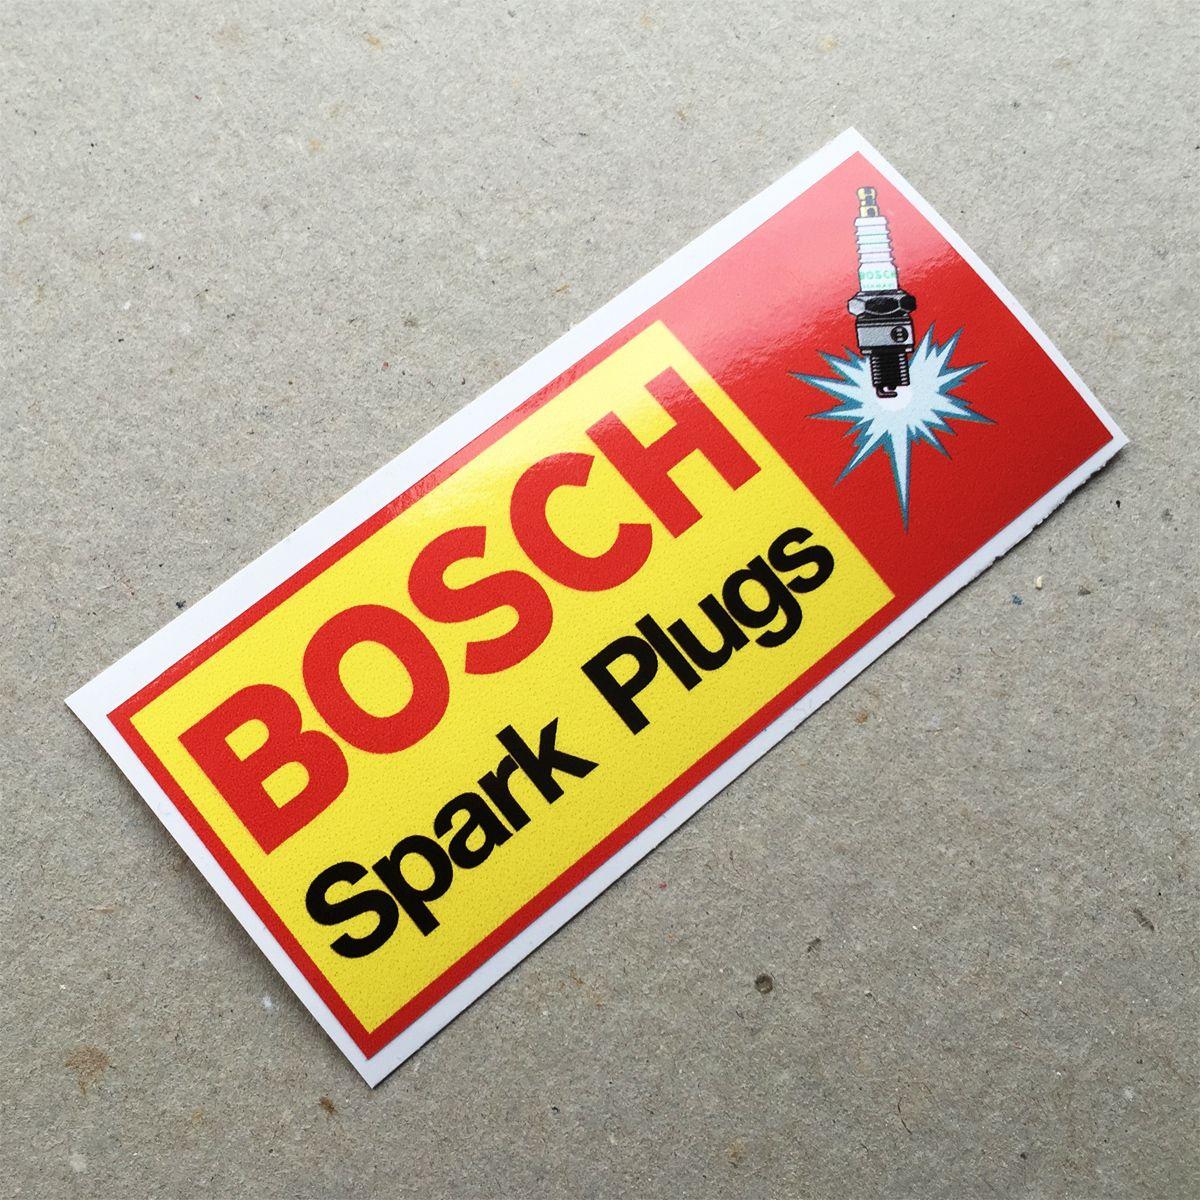 Bosch Spark Plugs Logo - Vintage sticker